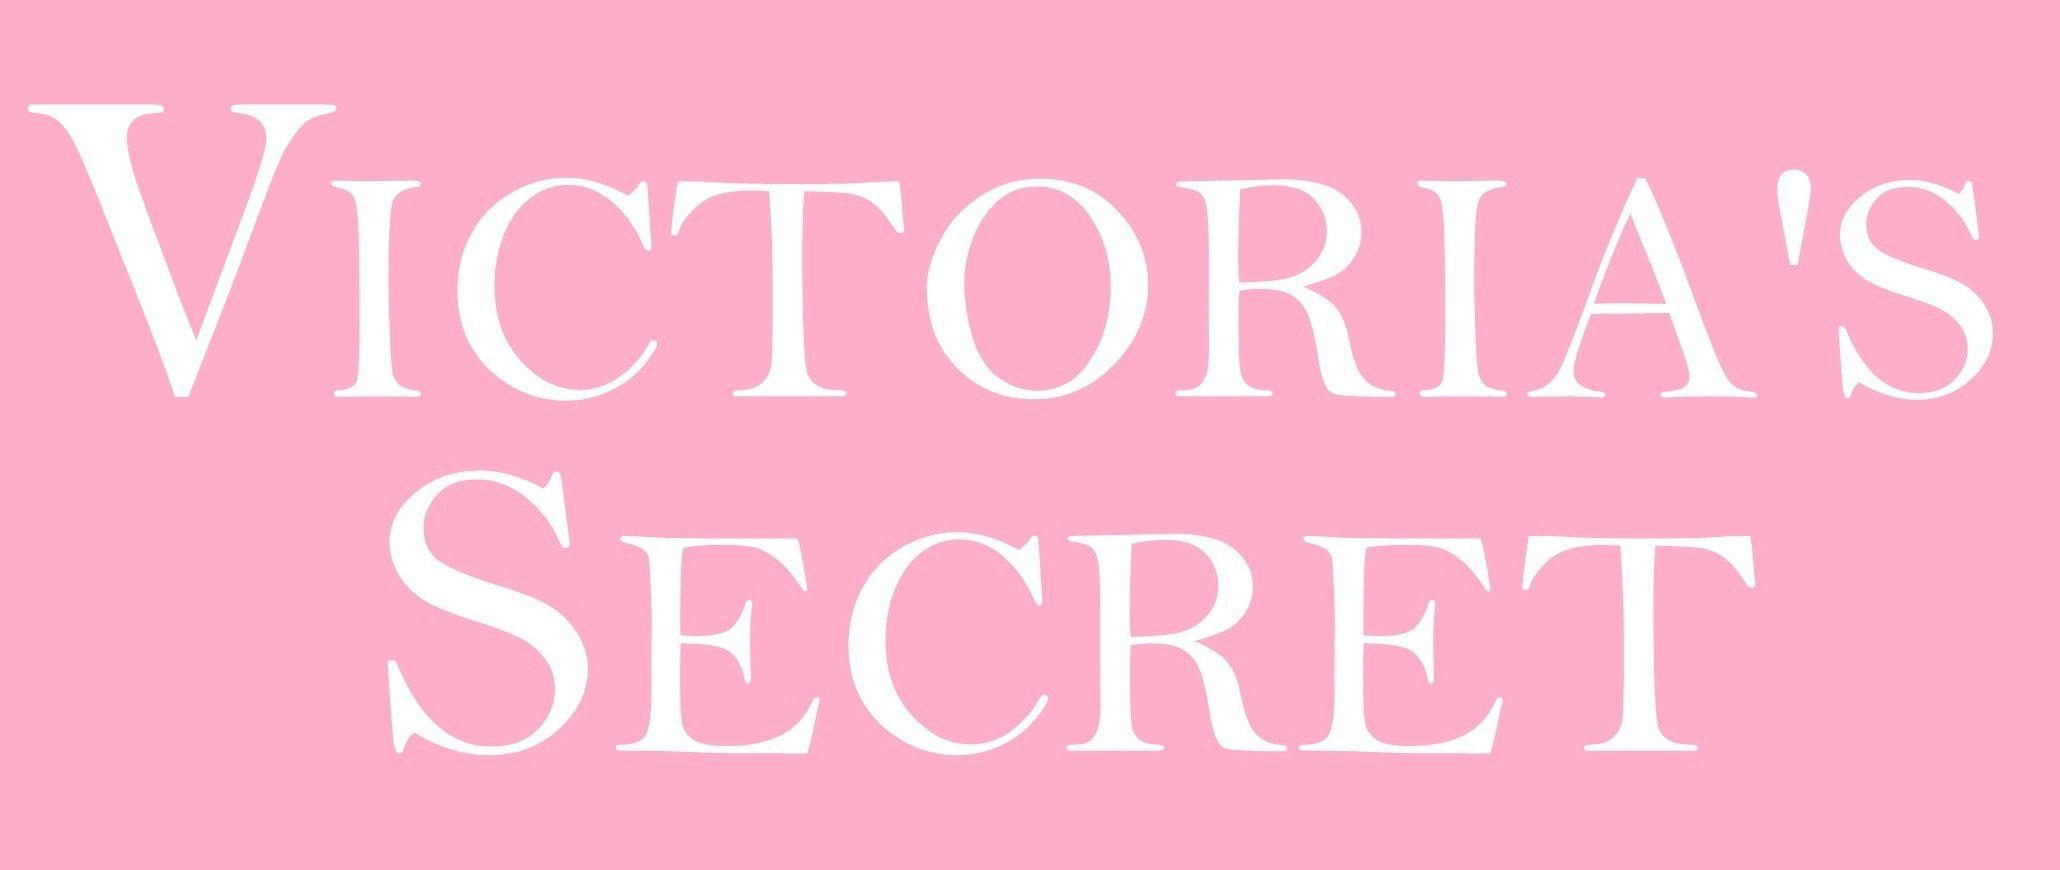 Victoria's Secret Wallpapers - Wallpaper Cave